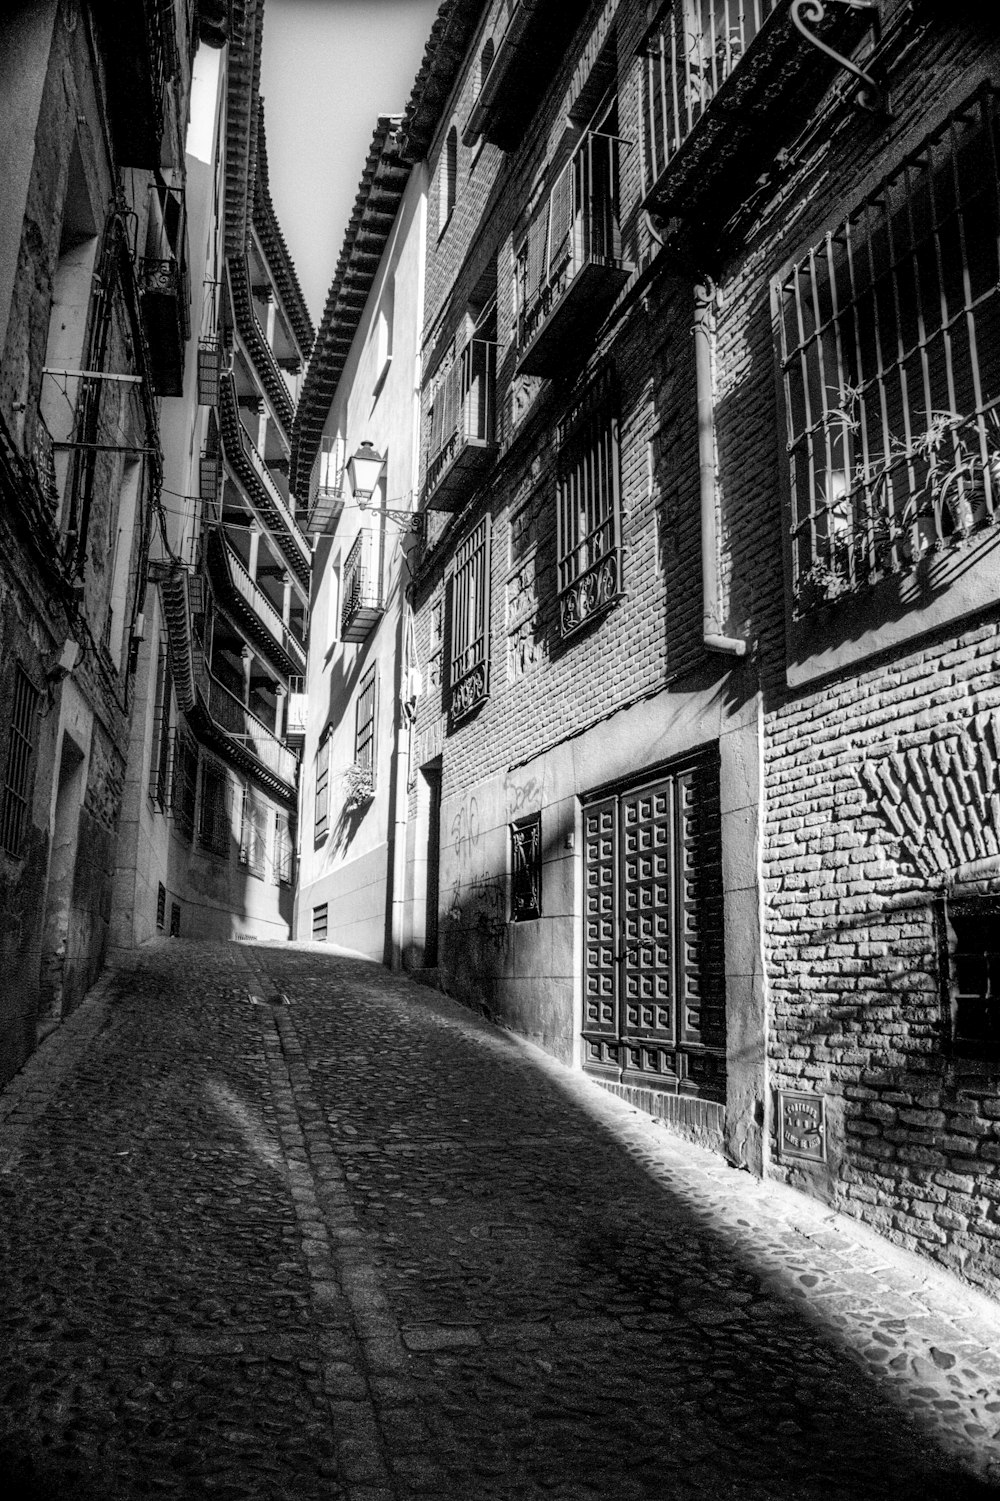 Une photo en noir et blanc d’une rue étroite